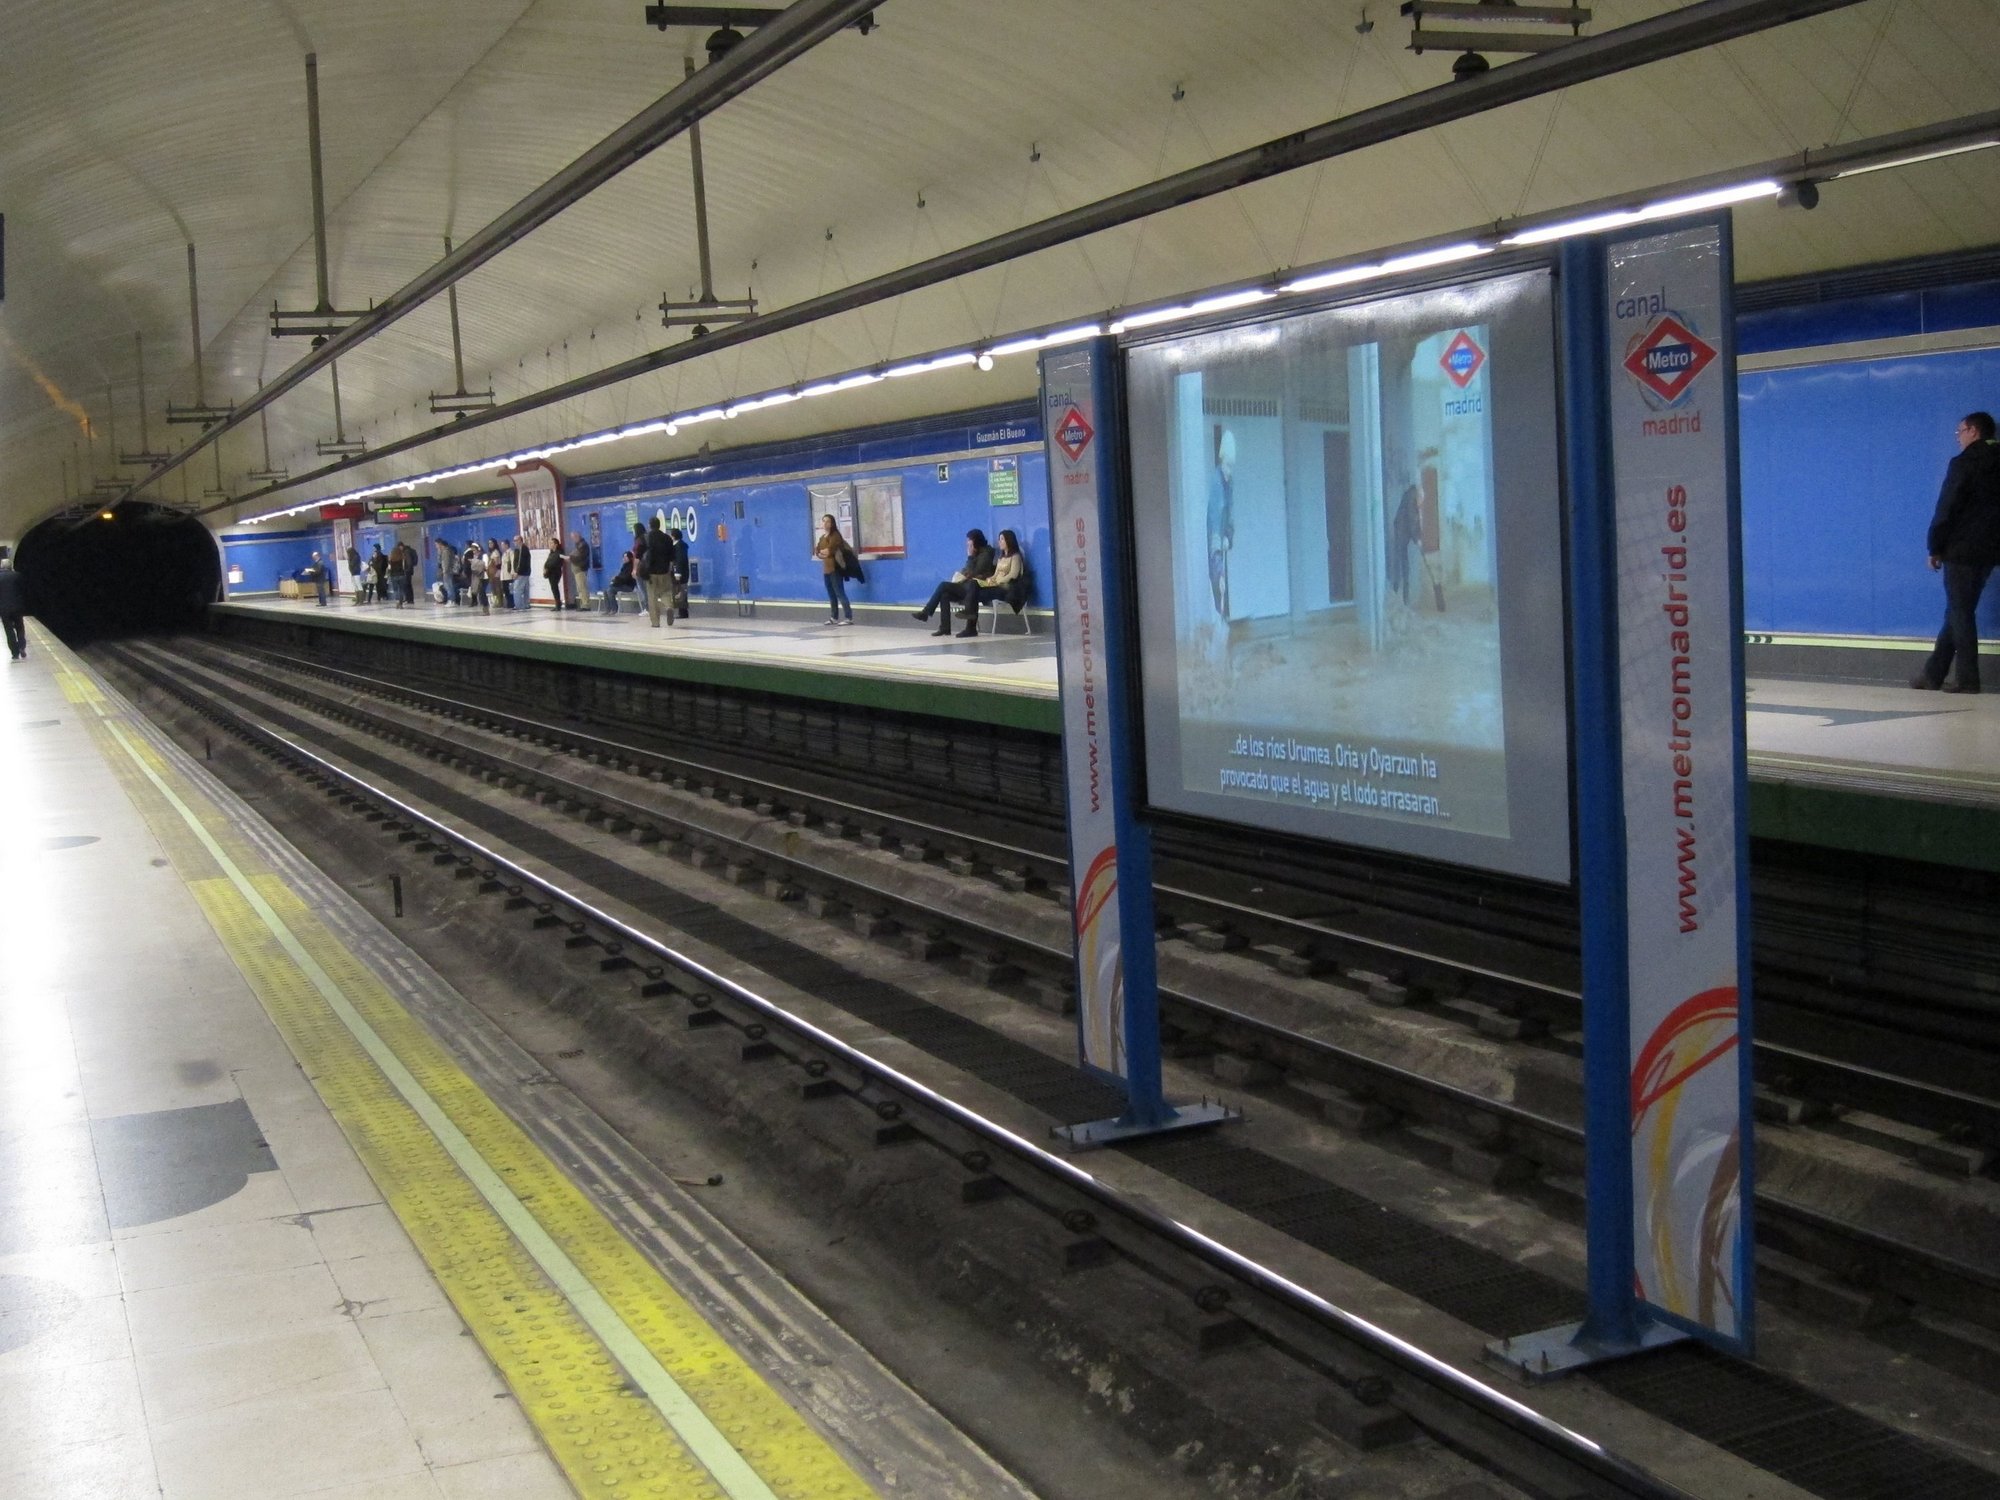 Reanudado el servicio en línea 6 de Metro tras quedar interrumpido durante media hora